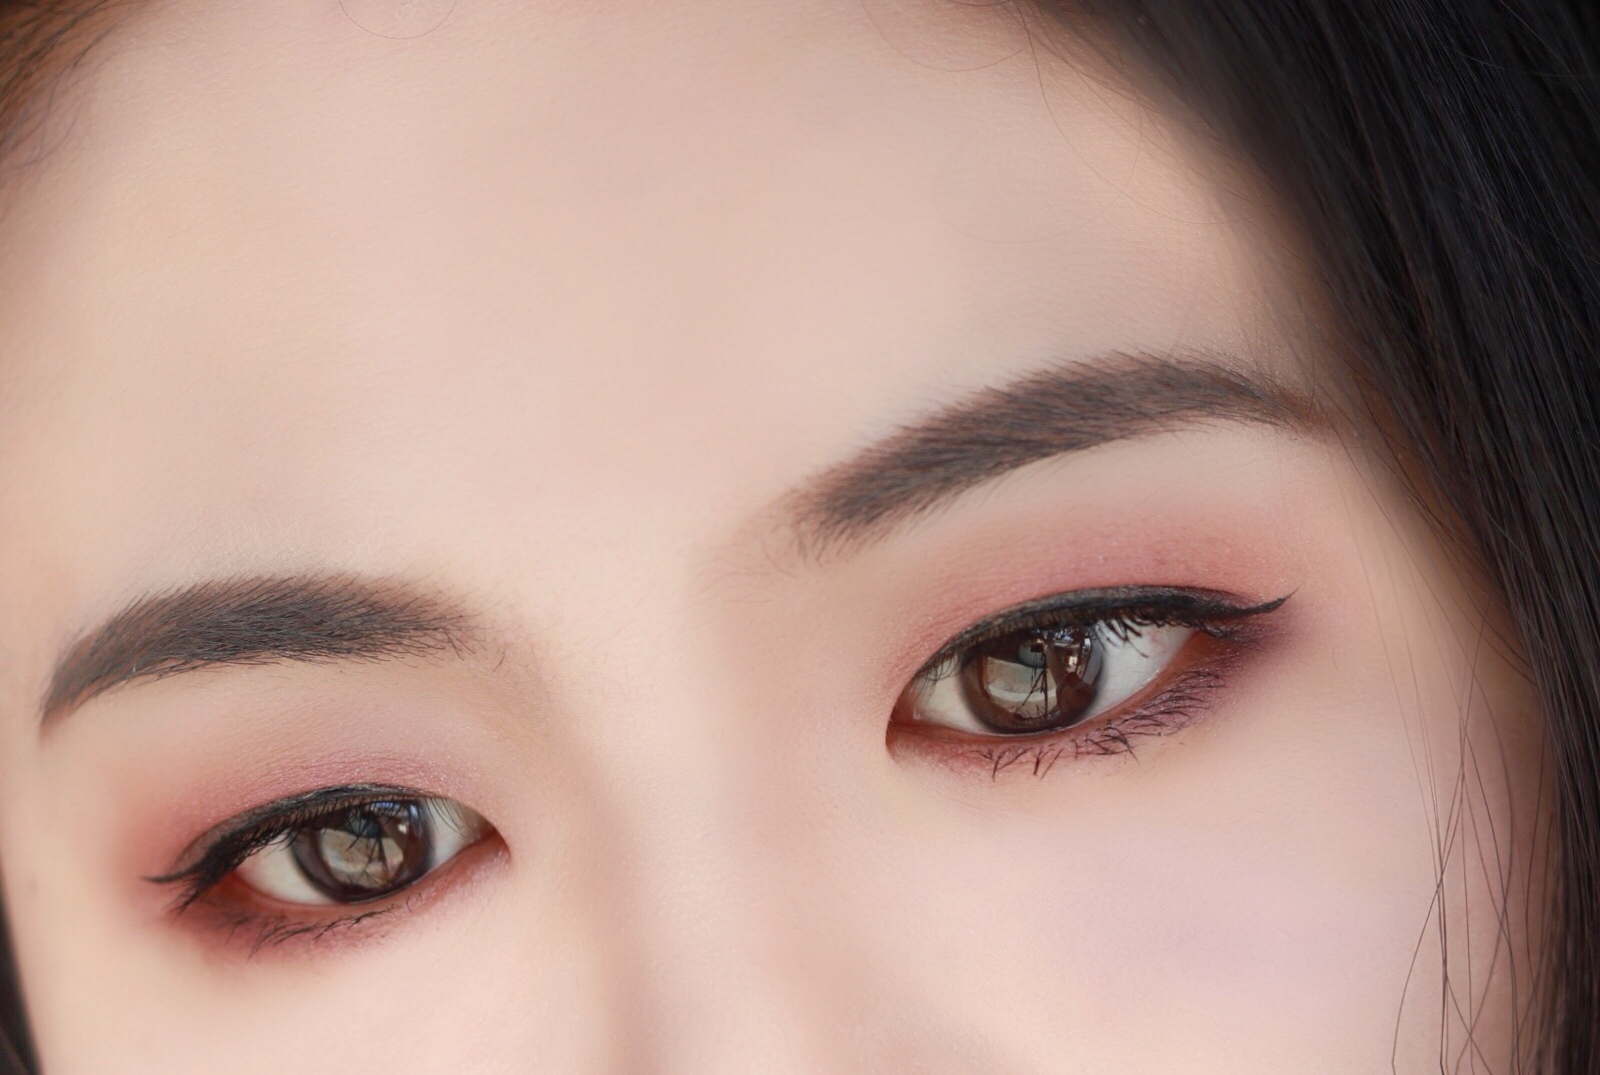 今天眼妆大胆挑战绿色→_→紫色眼影和睫毛膏